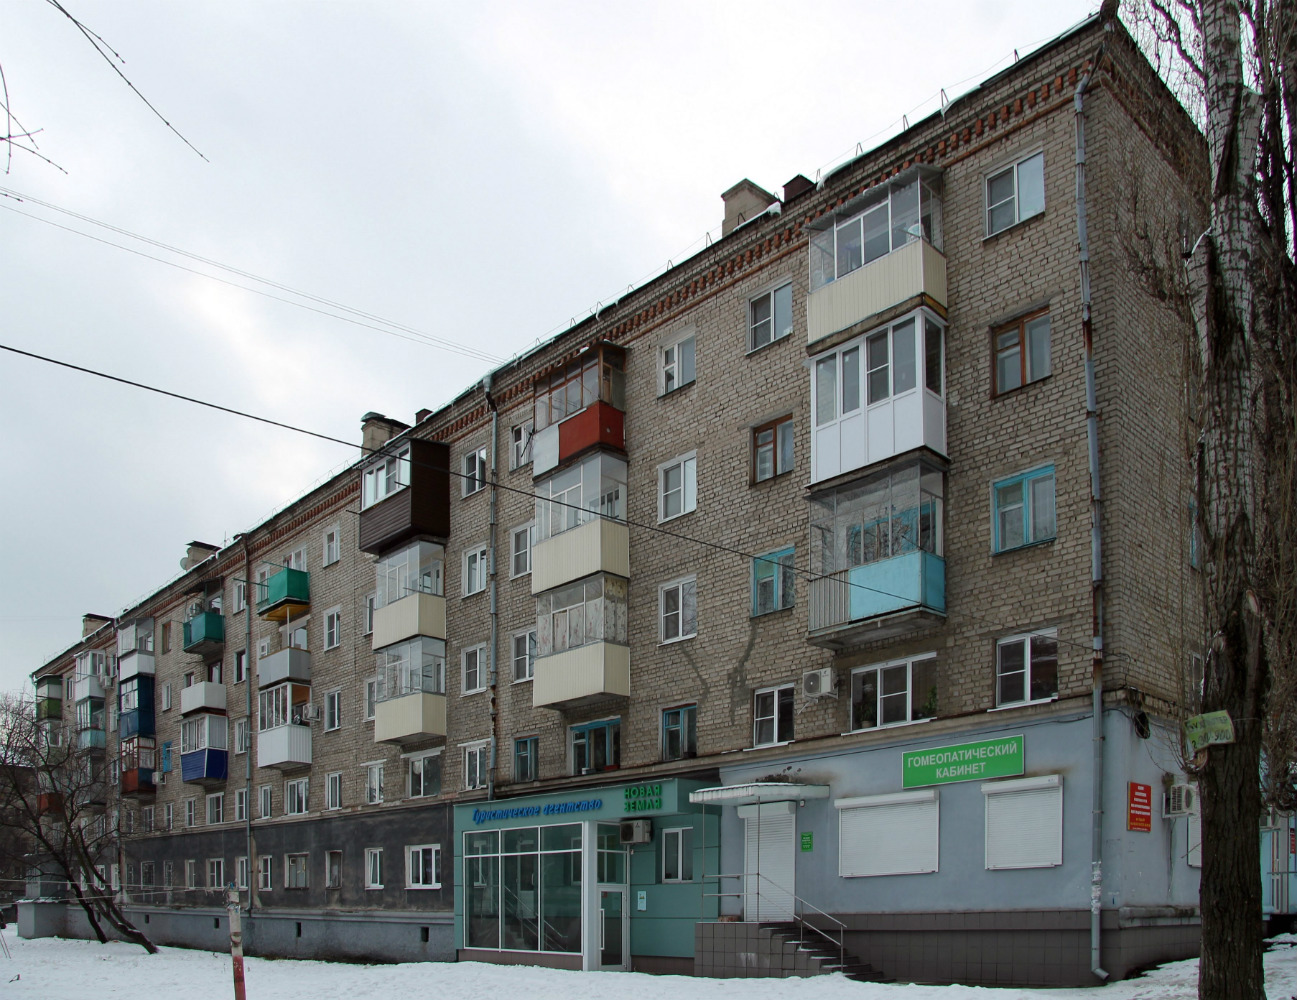 Woroneż, Улица Варейкиса, 53